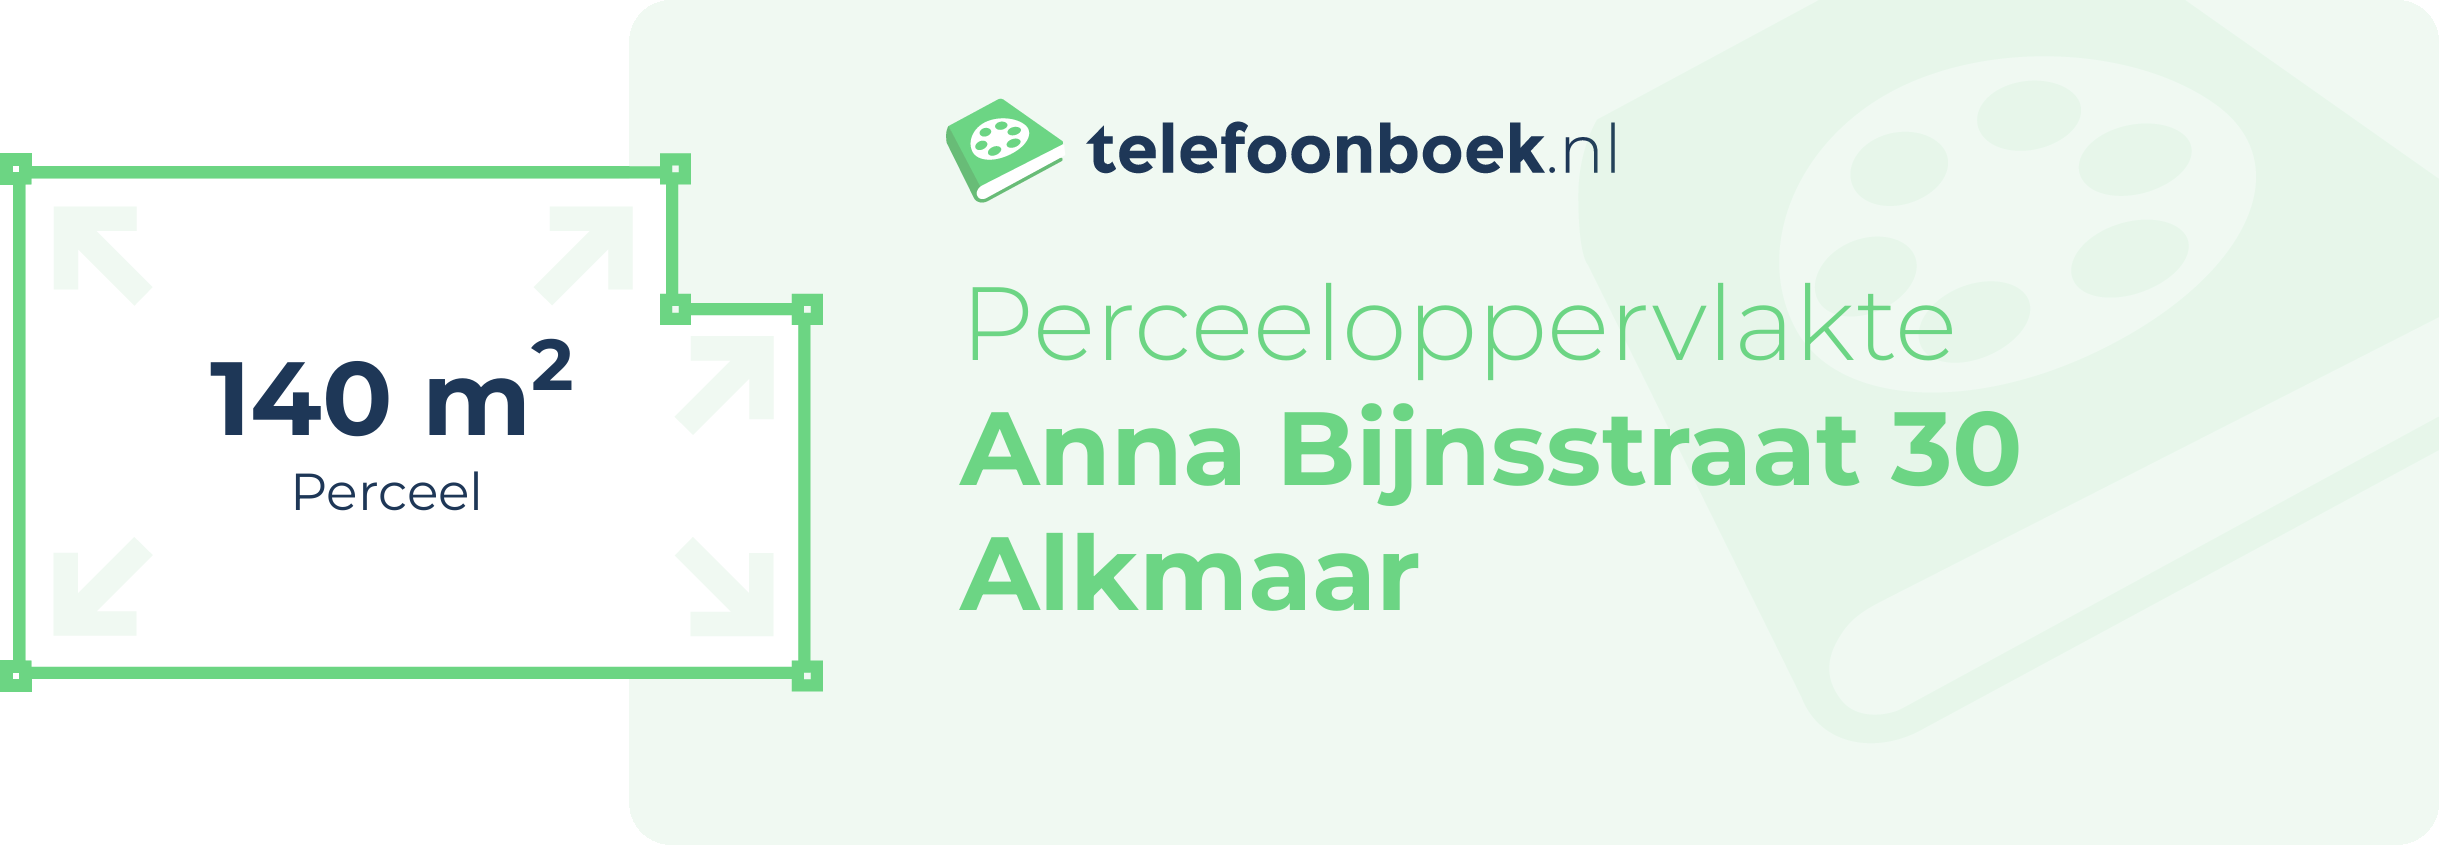 Perceeloppervlakte Anna Bijnsstraat 30 Alkmaar